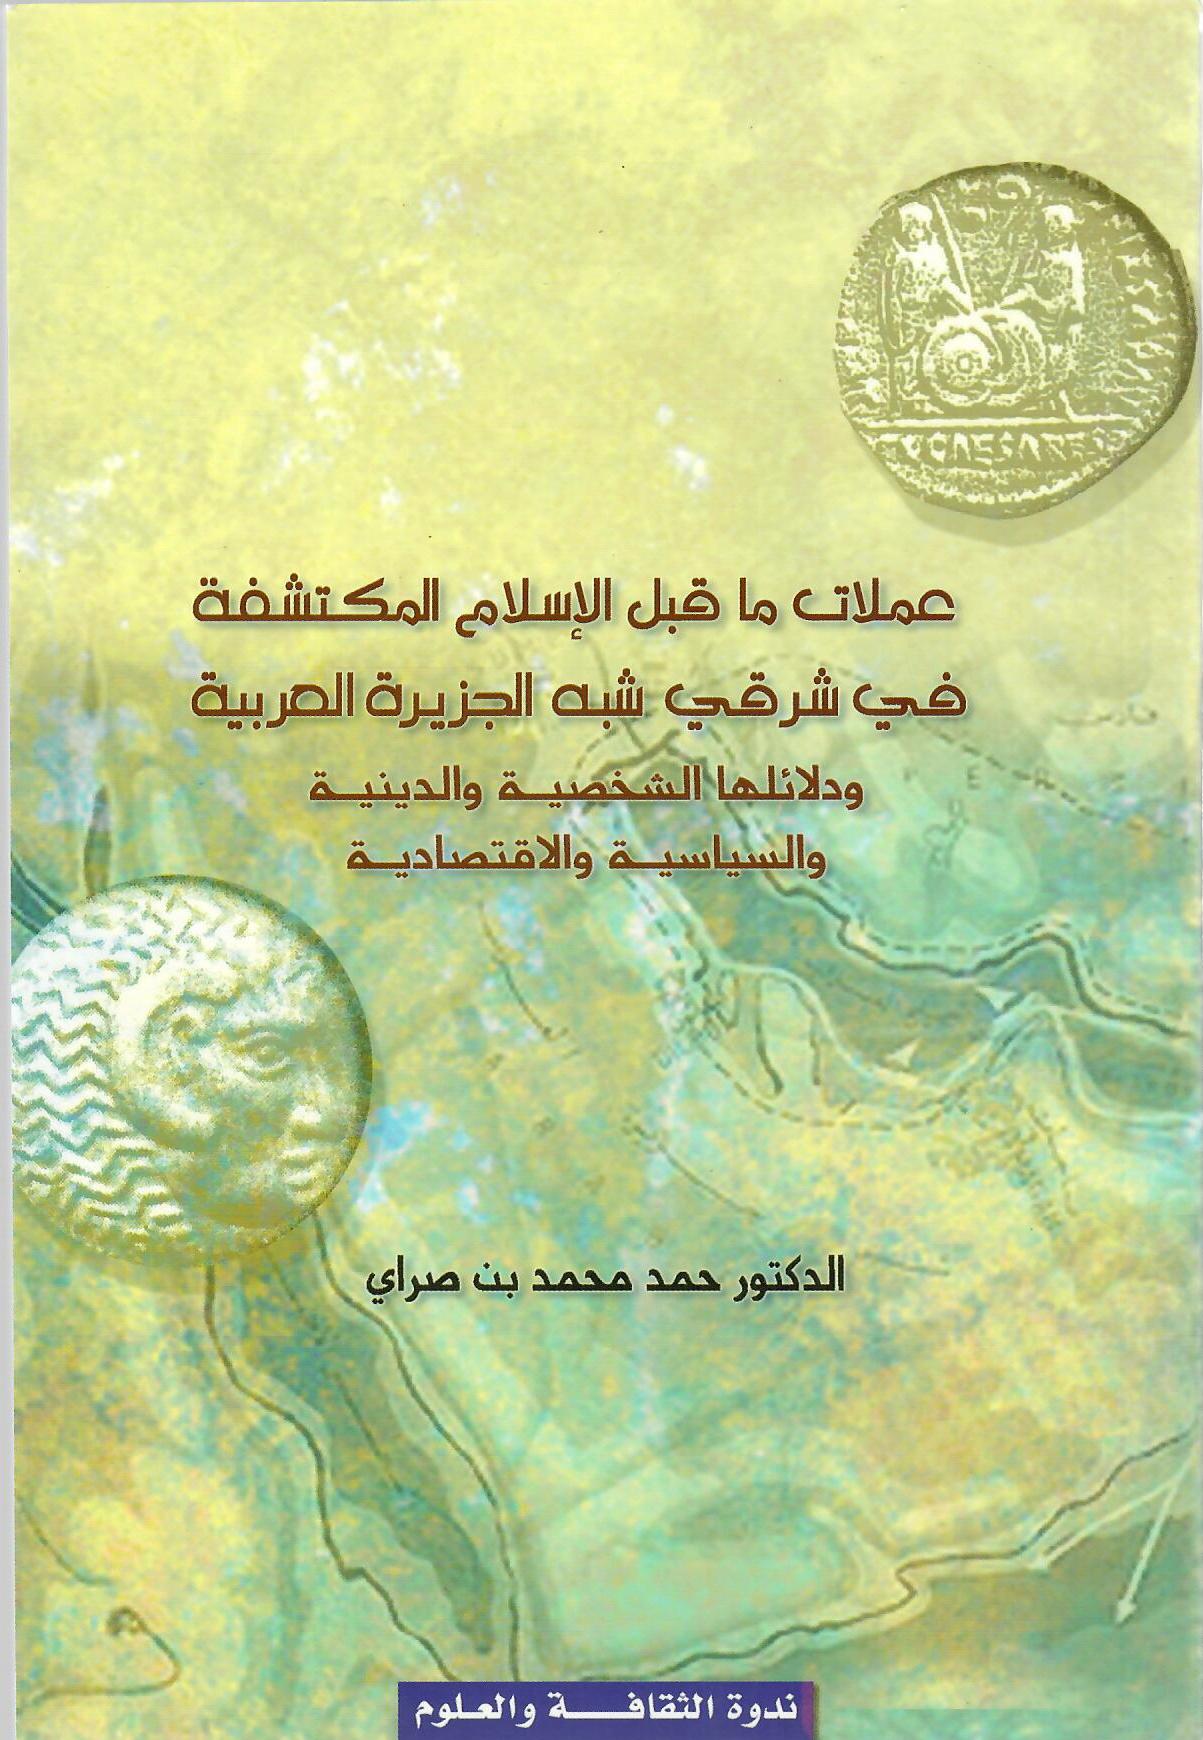 عملات ما قبل الإسلام المكتشفة في شرقي شبه الحزيرة العربية ودلائلها الشخصية والدينية والسياسية والاقتصادية